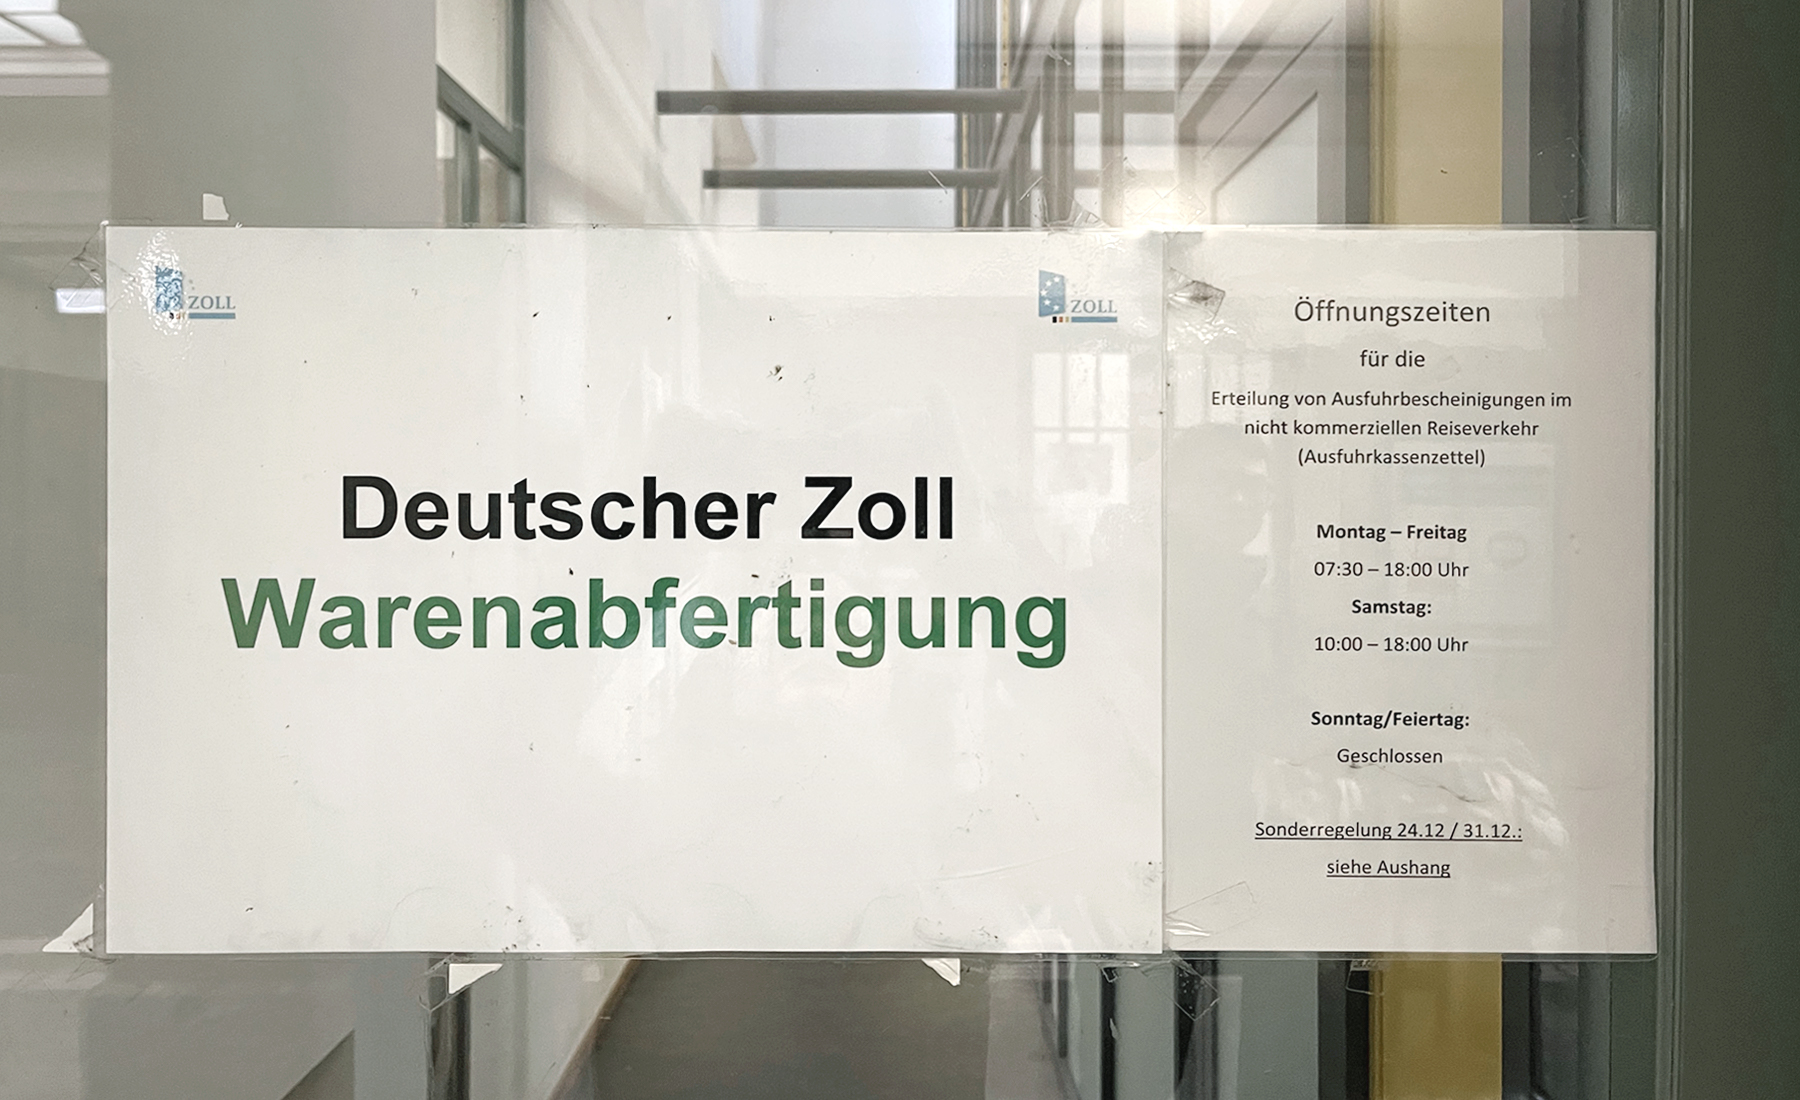 德瑞邊境 Basel Bad Bf 車站，退稅經驗分享 - 德國海關辦公室辦公時間